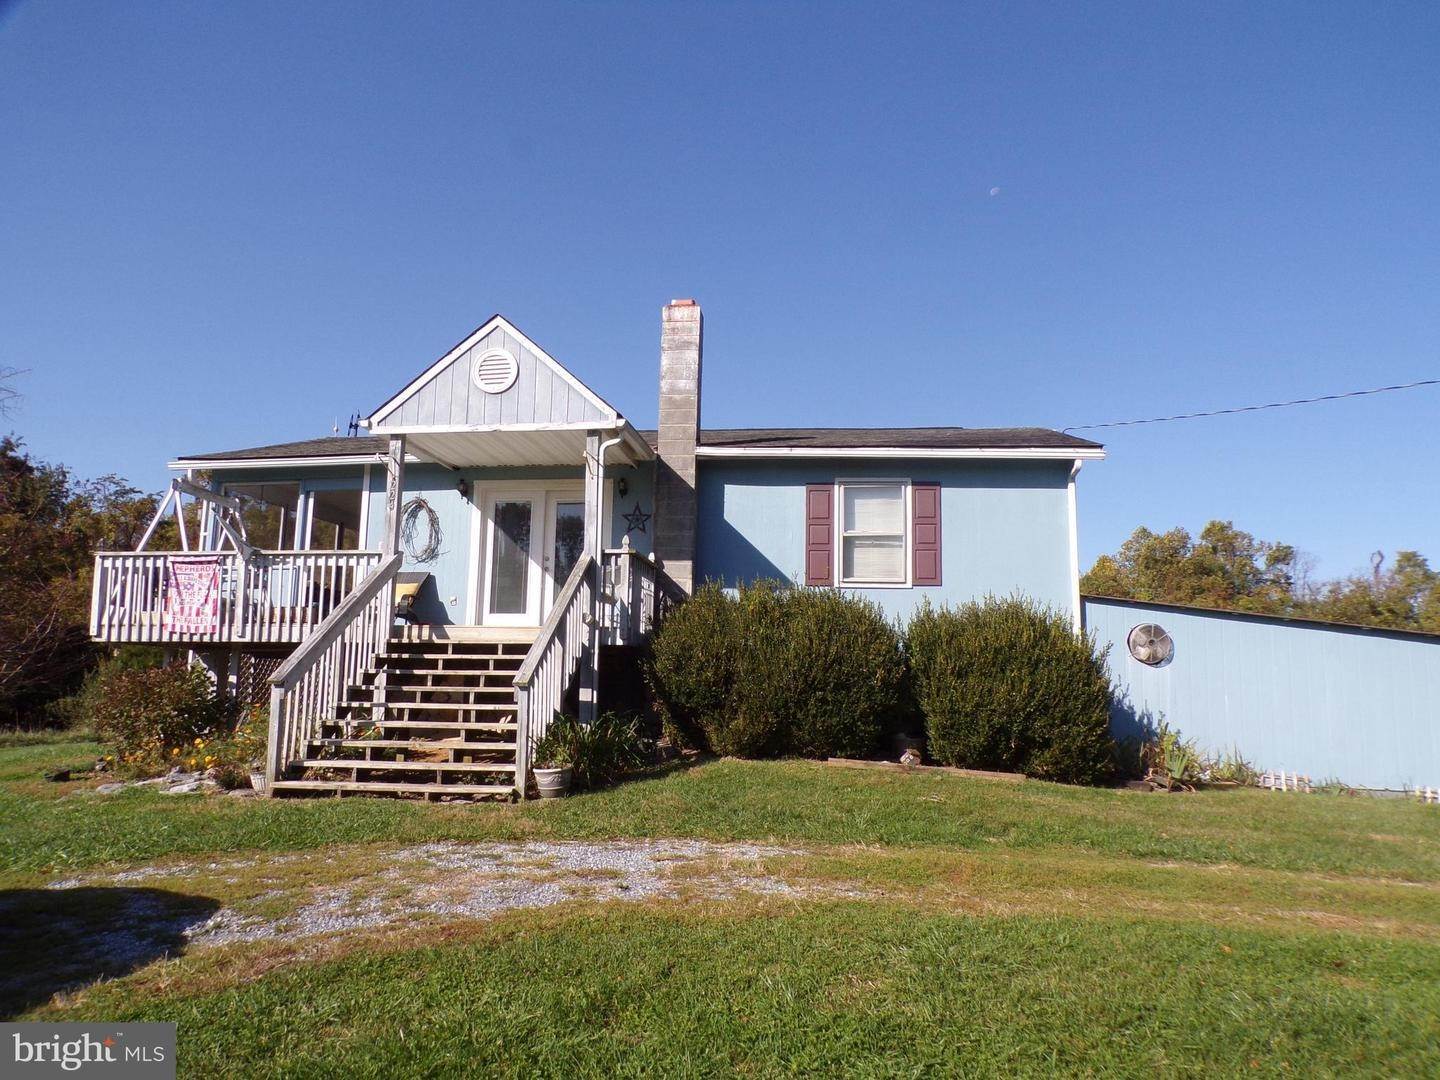 Single Family Homes für Verkauf beim Harpers Ferry, West Virginia 25425 Vereinigte Staaten